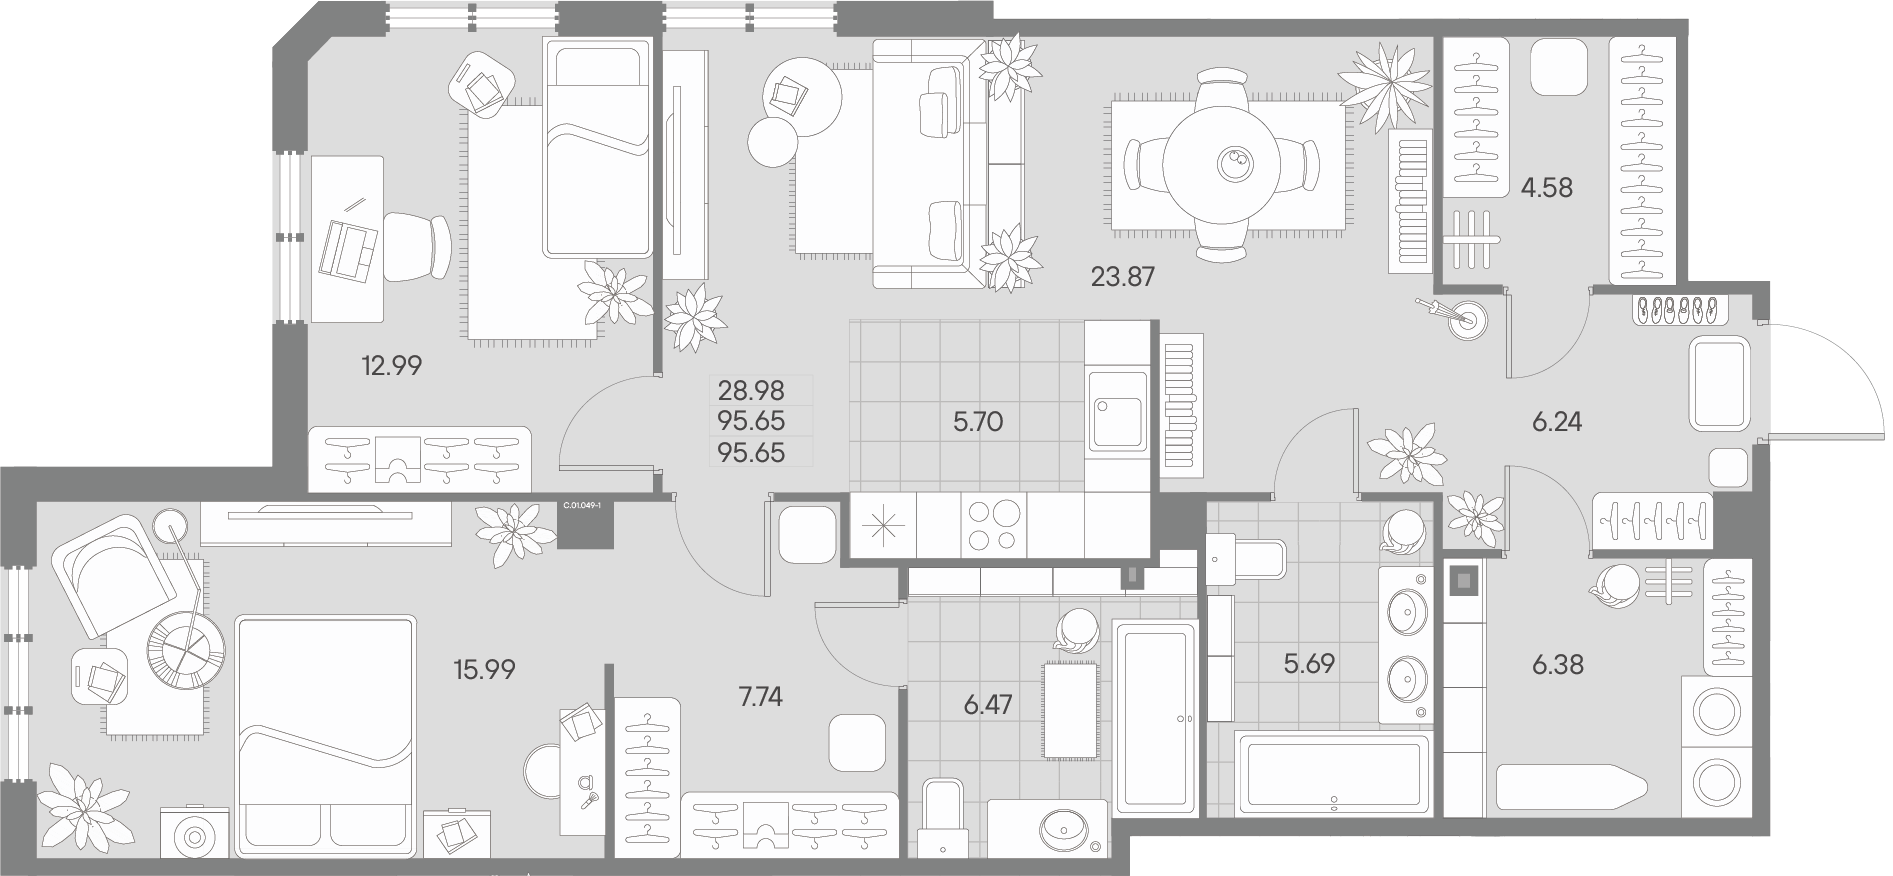 2-комнатная квартира  №49-1 в Черная речка, 41: 95.65 м², этаж 1 - купить в Санкт-Петербурге